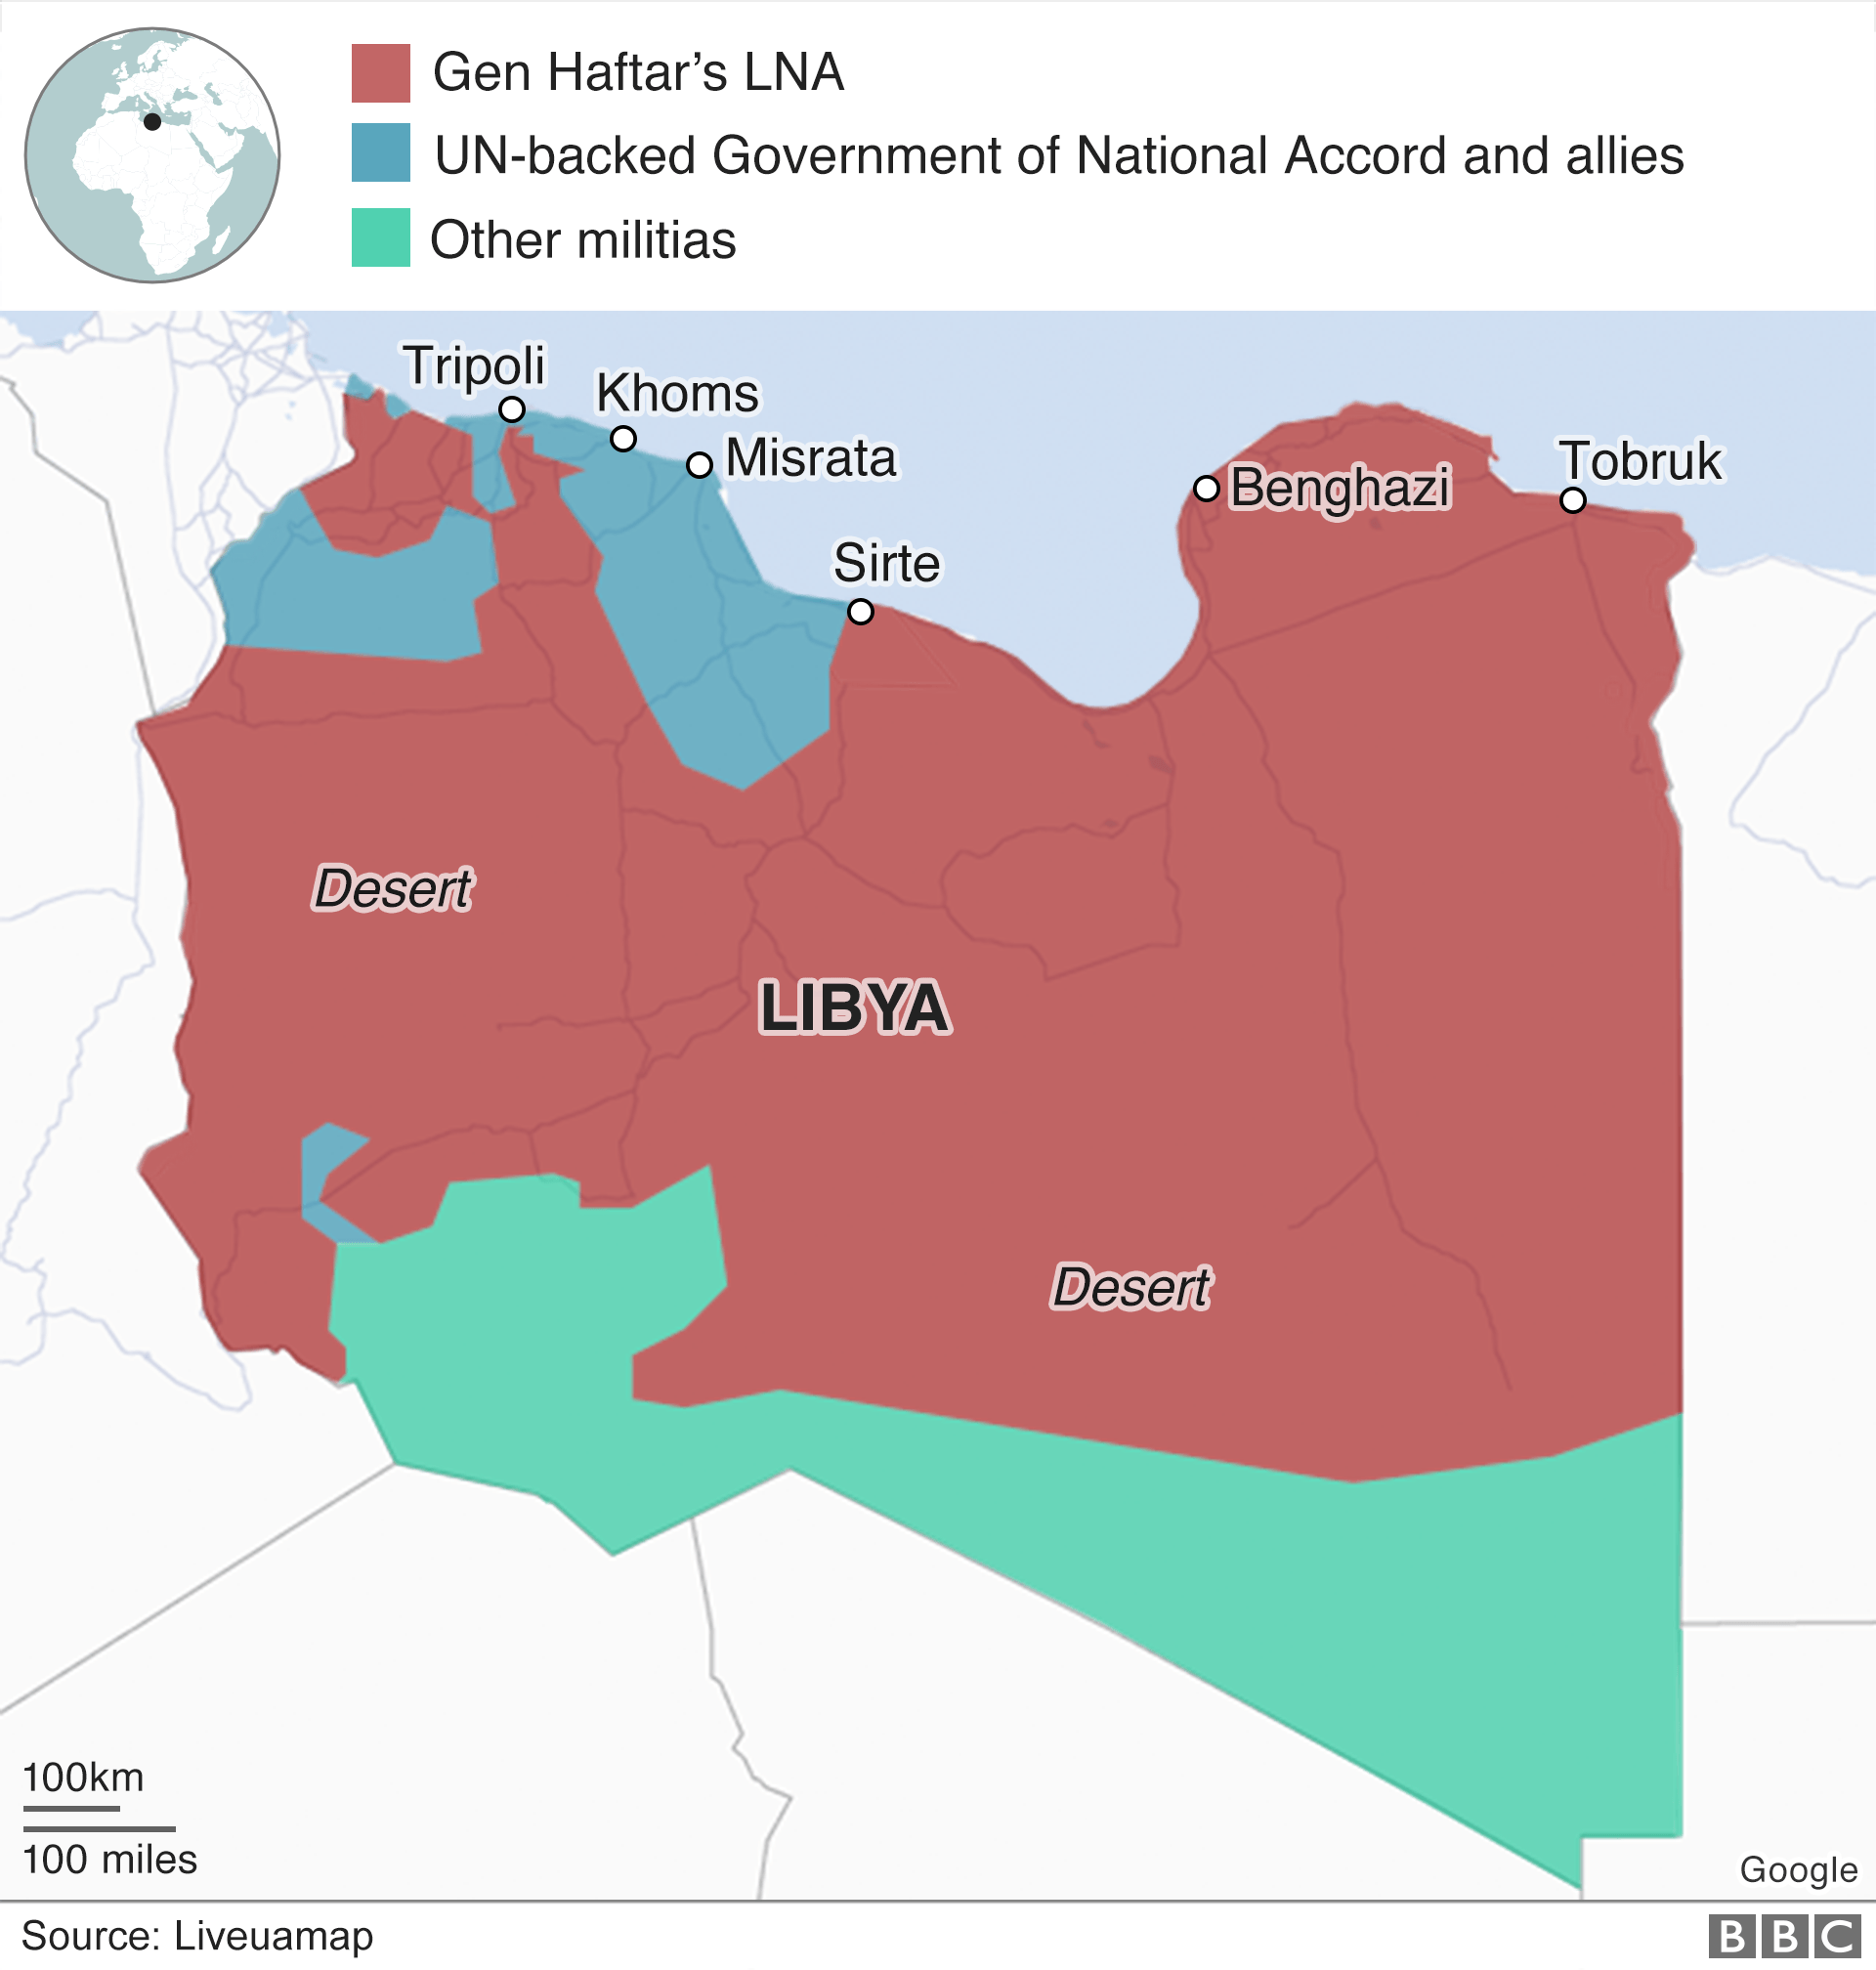 Карта показывает, кто контролирует различные части Ливии